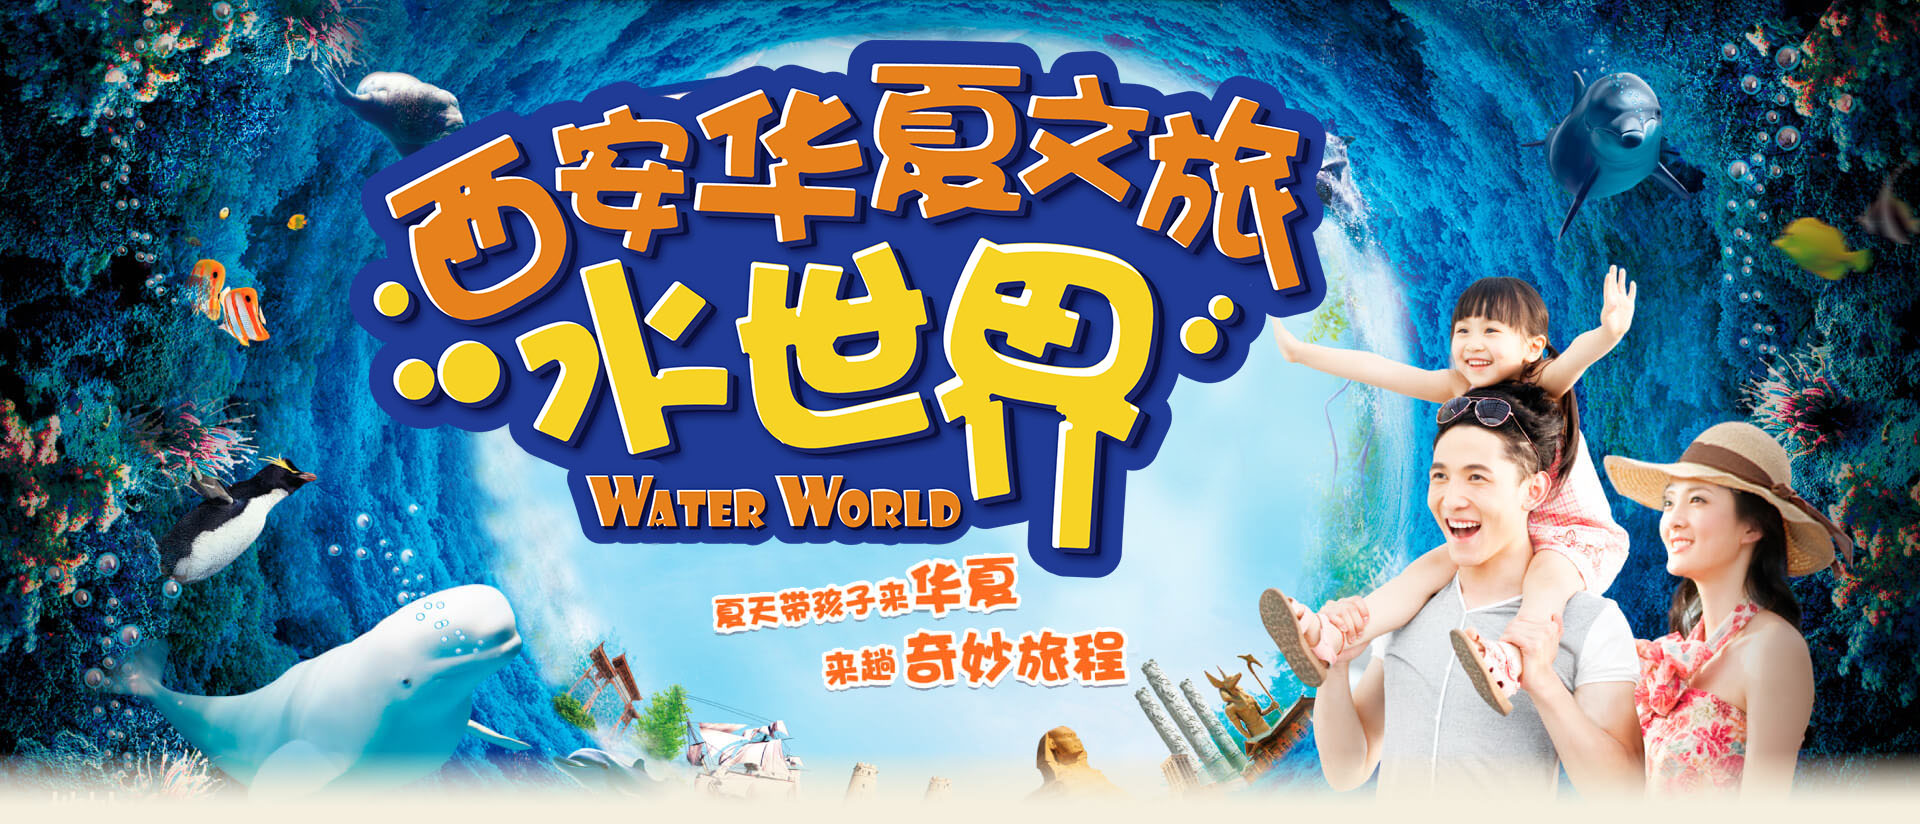 Xi 'an Huaxia travel water world